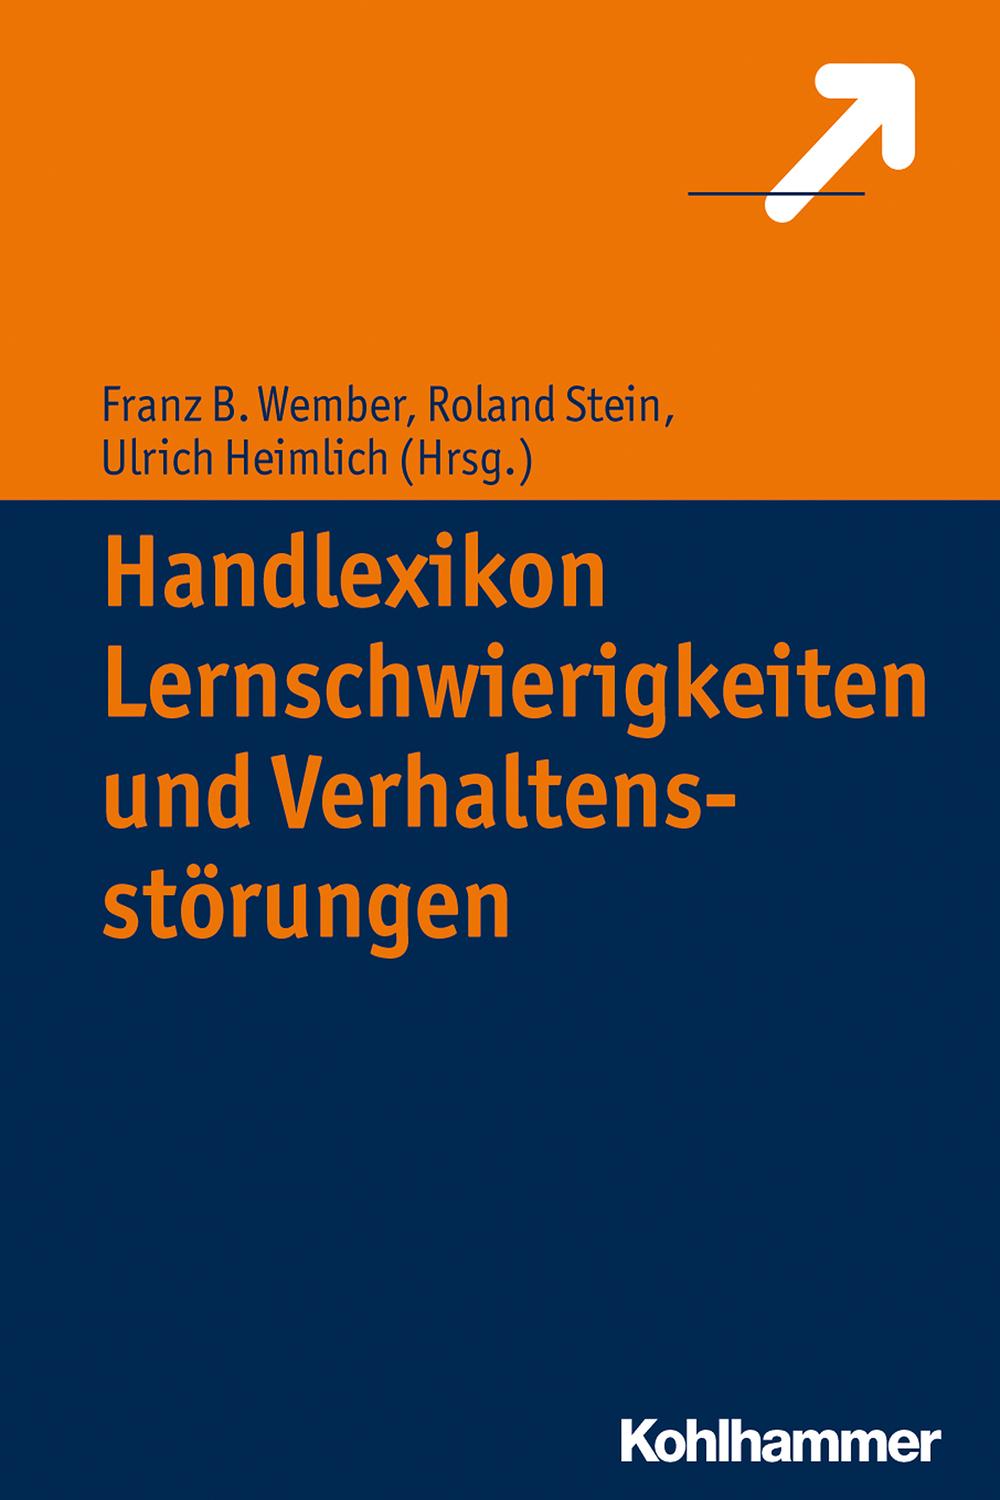 Handlexikon Lernschwierigkeiten und Verhaltensstörungen - Franz B. Wember, Roland Stein, Ulrich Heimlich